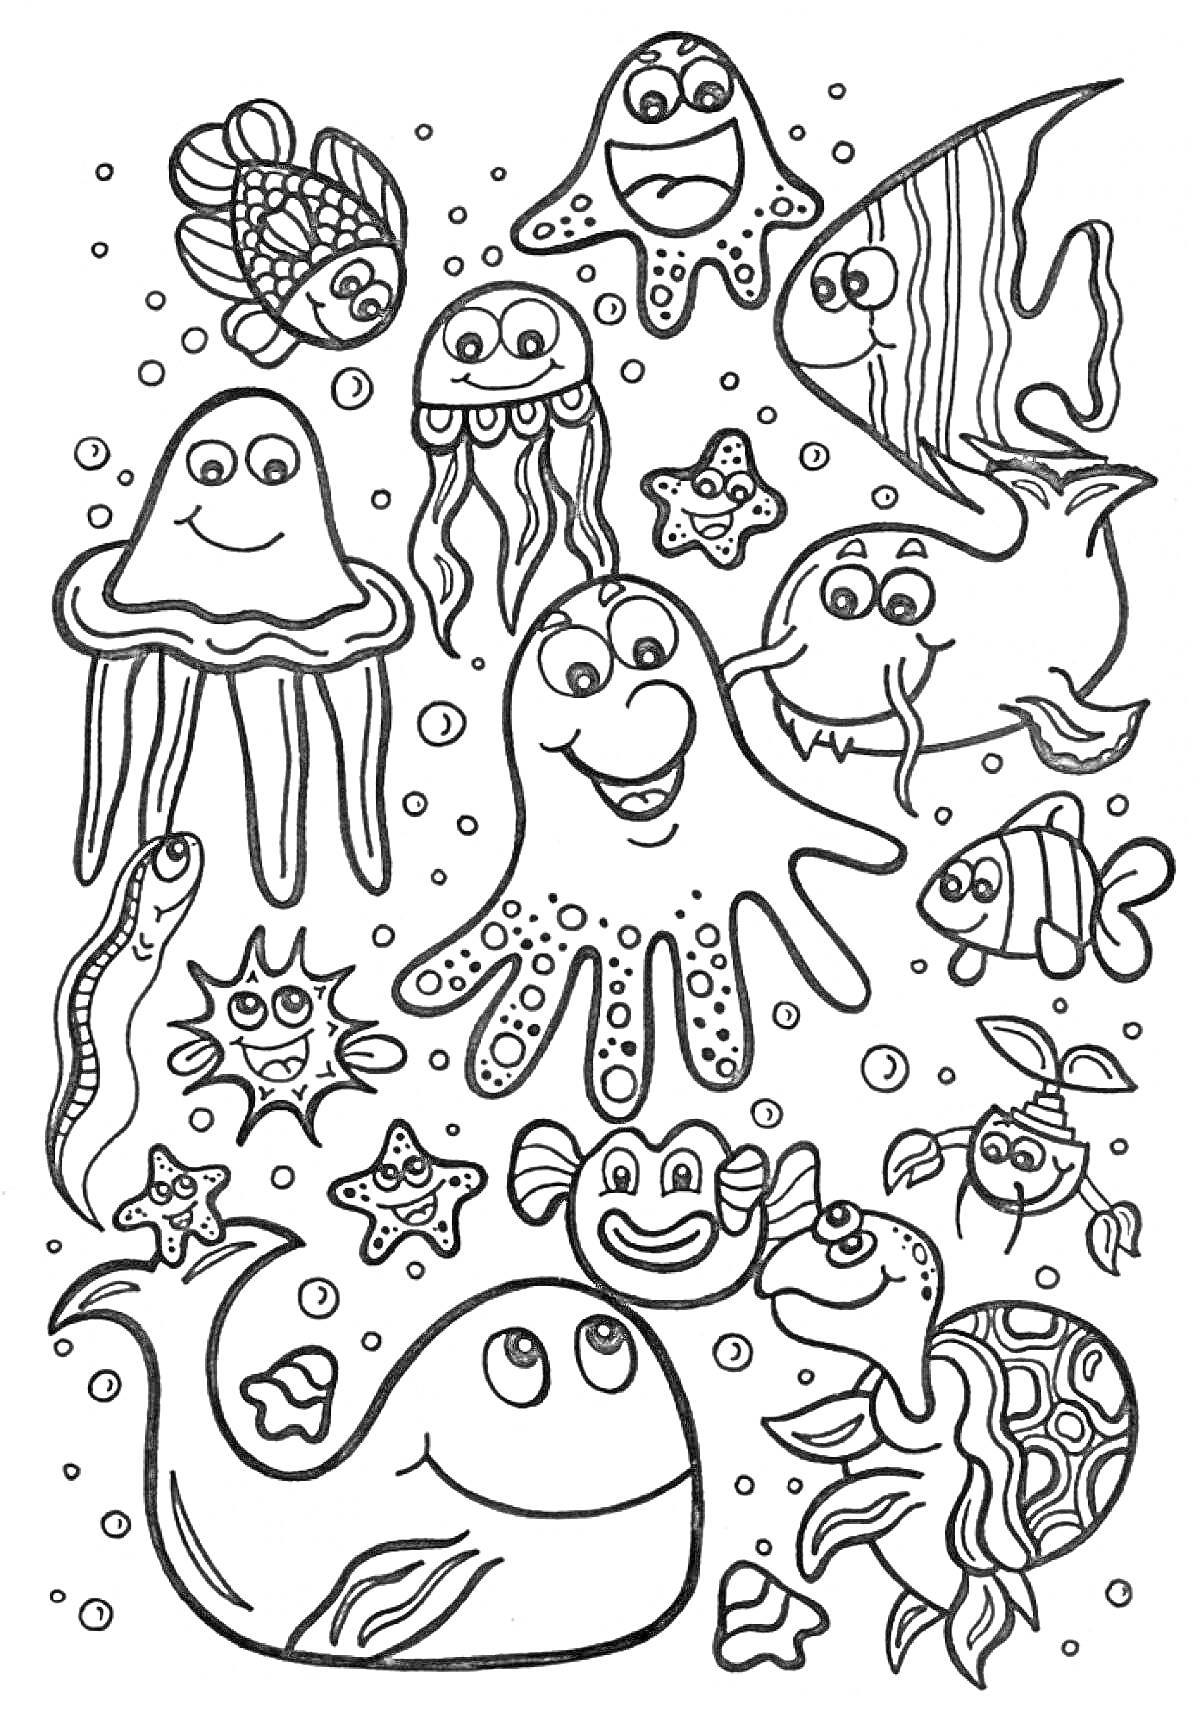 Морские обитатели - осьминог, рыбы, медузы, морская звезда, скаты, черепаха, кит, краб, угорь